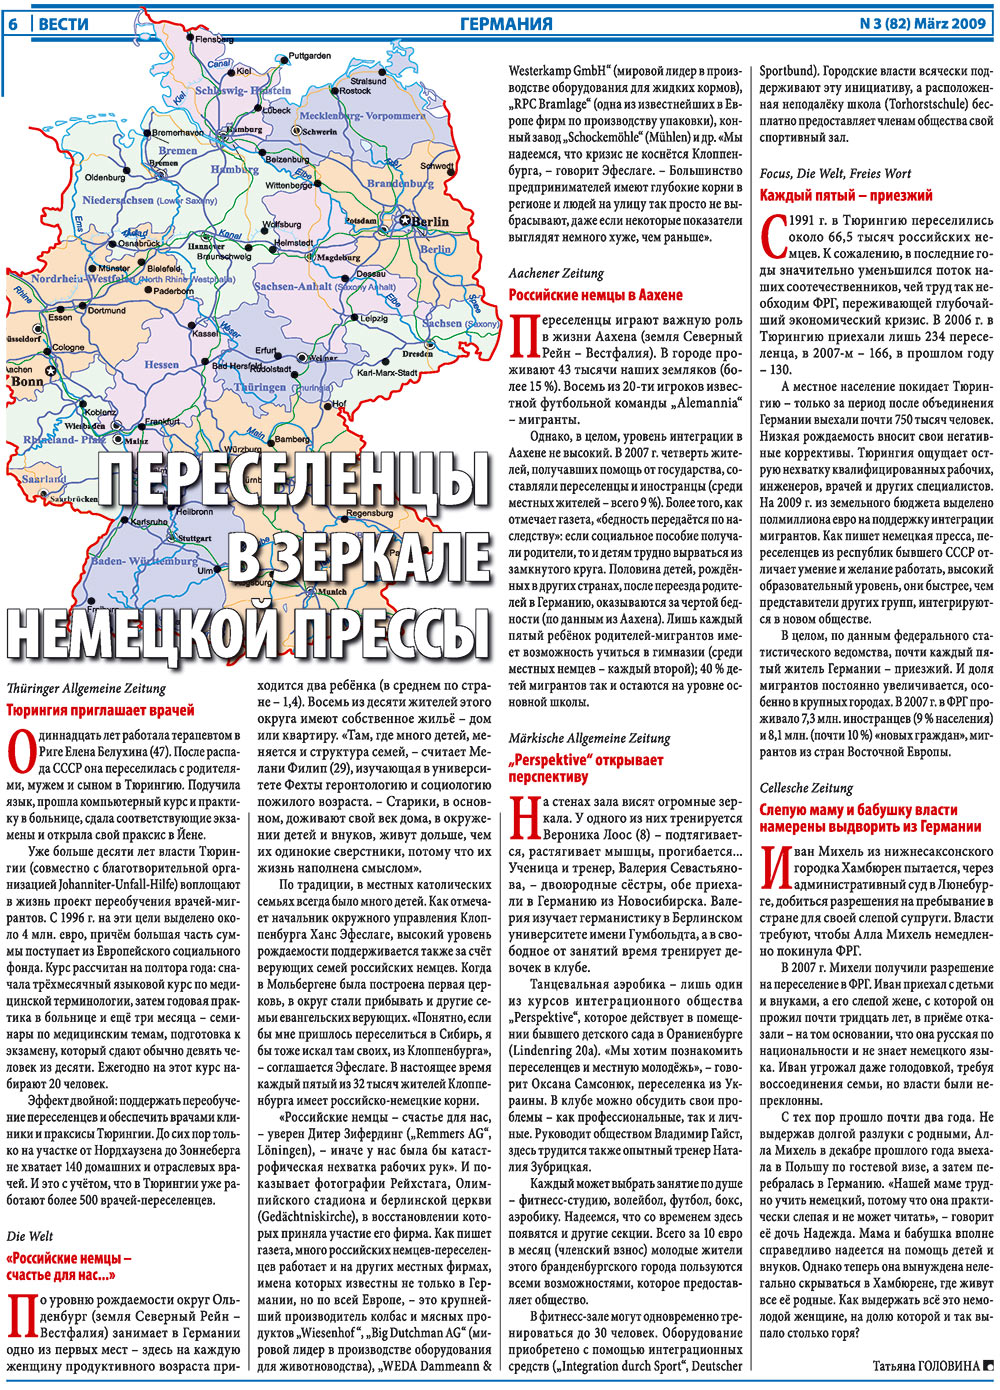 Вести, газета. 2009 №3 стр.6